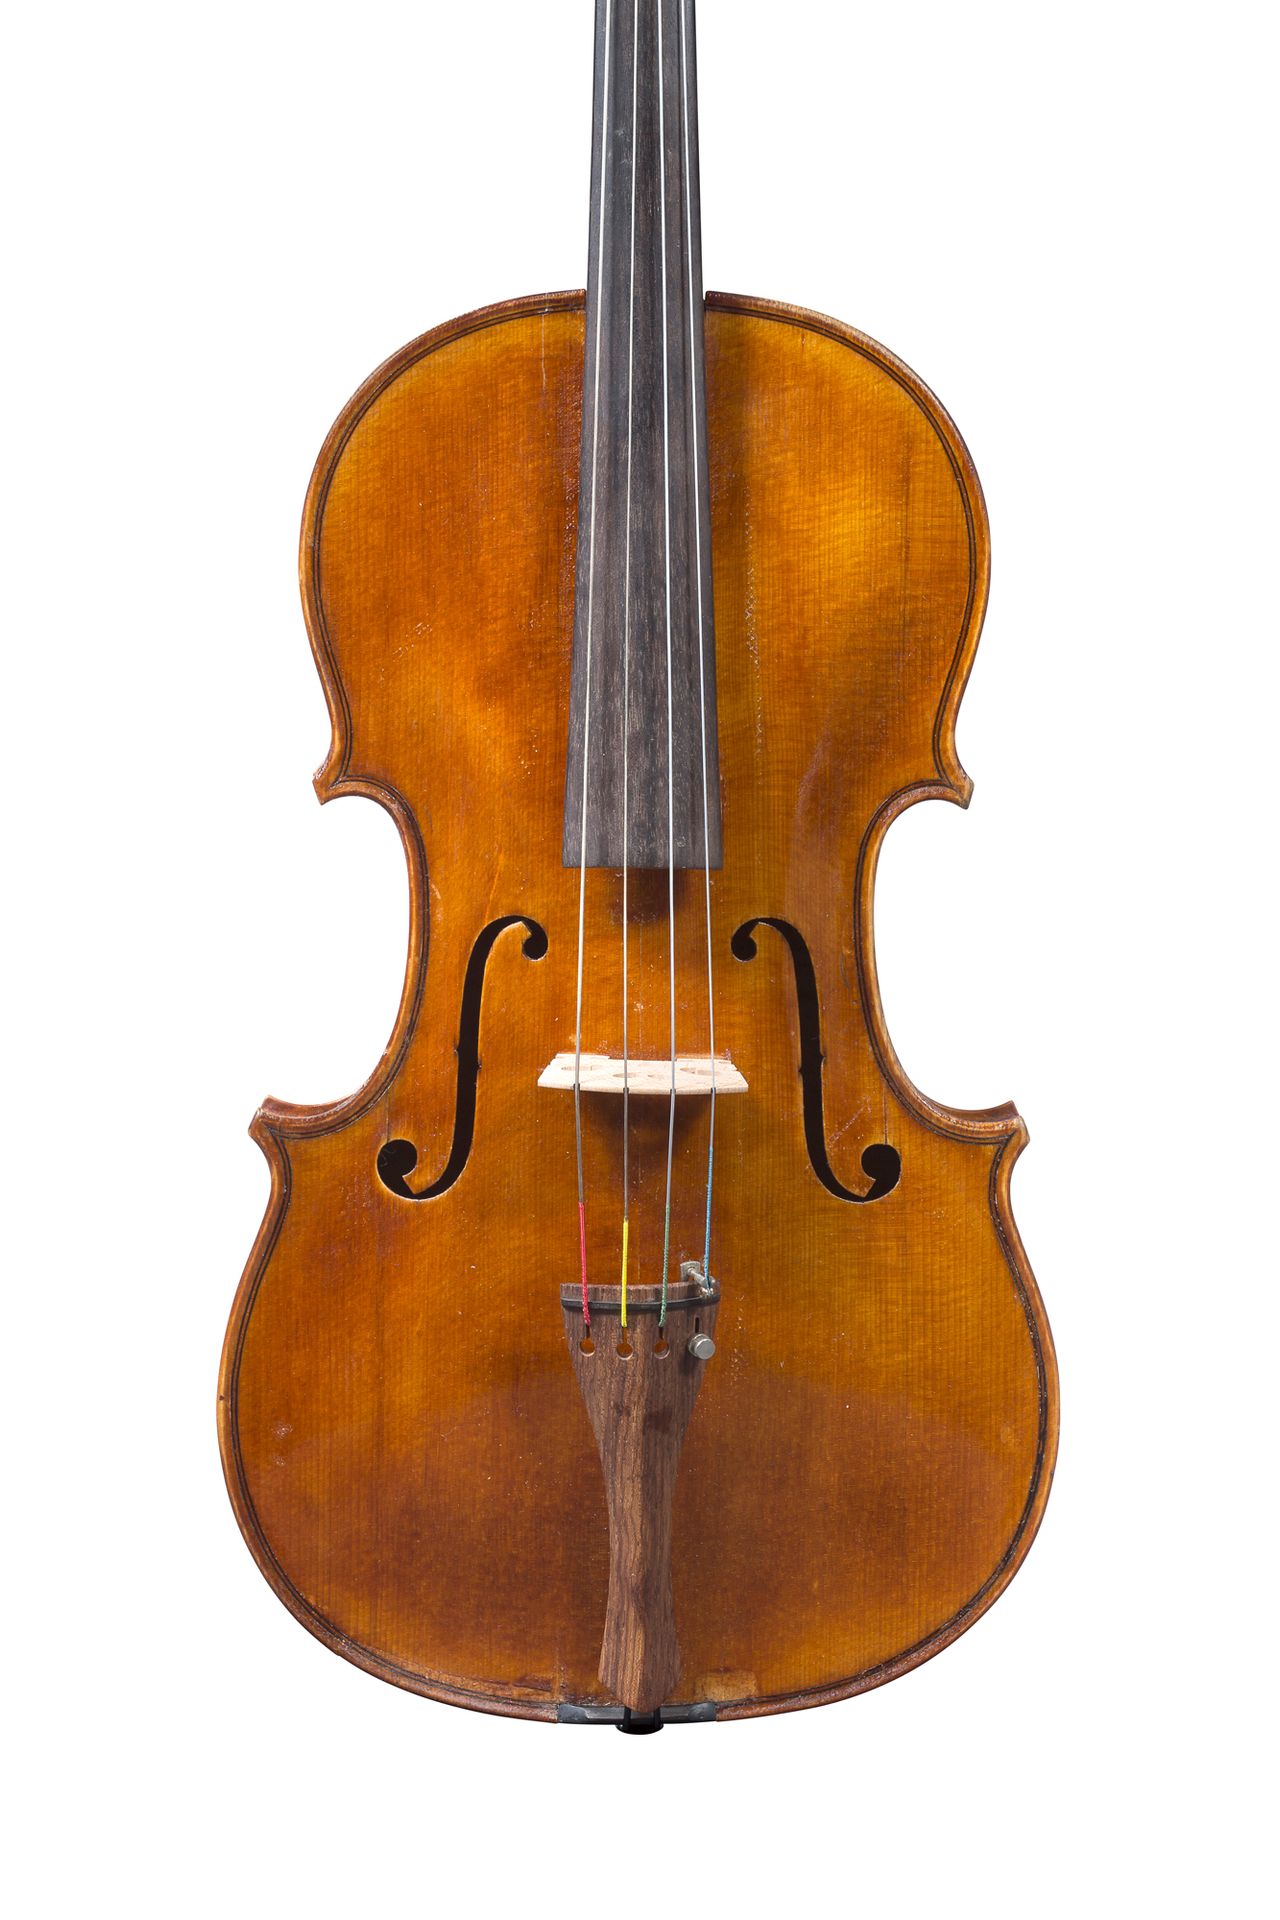 Null Viola de Dominique Galand
Fabricante de violines en Mirecourt
Con la etique&hellip;